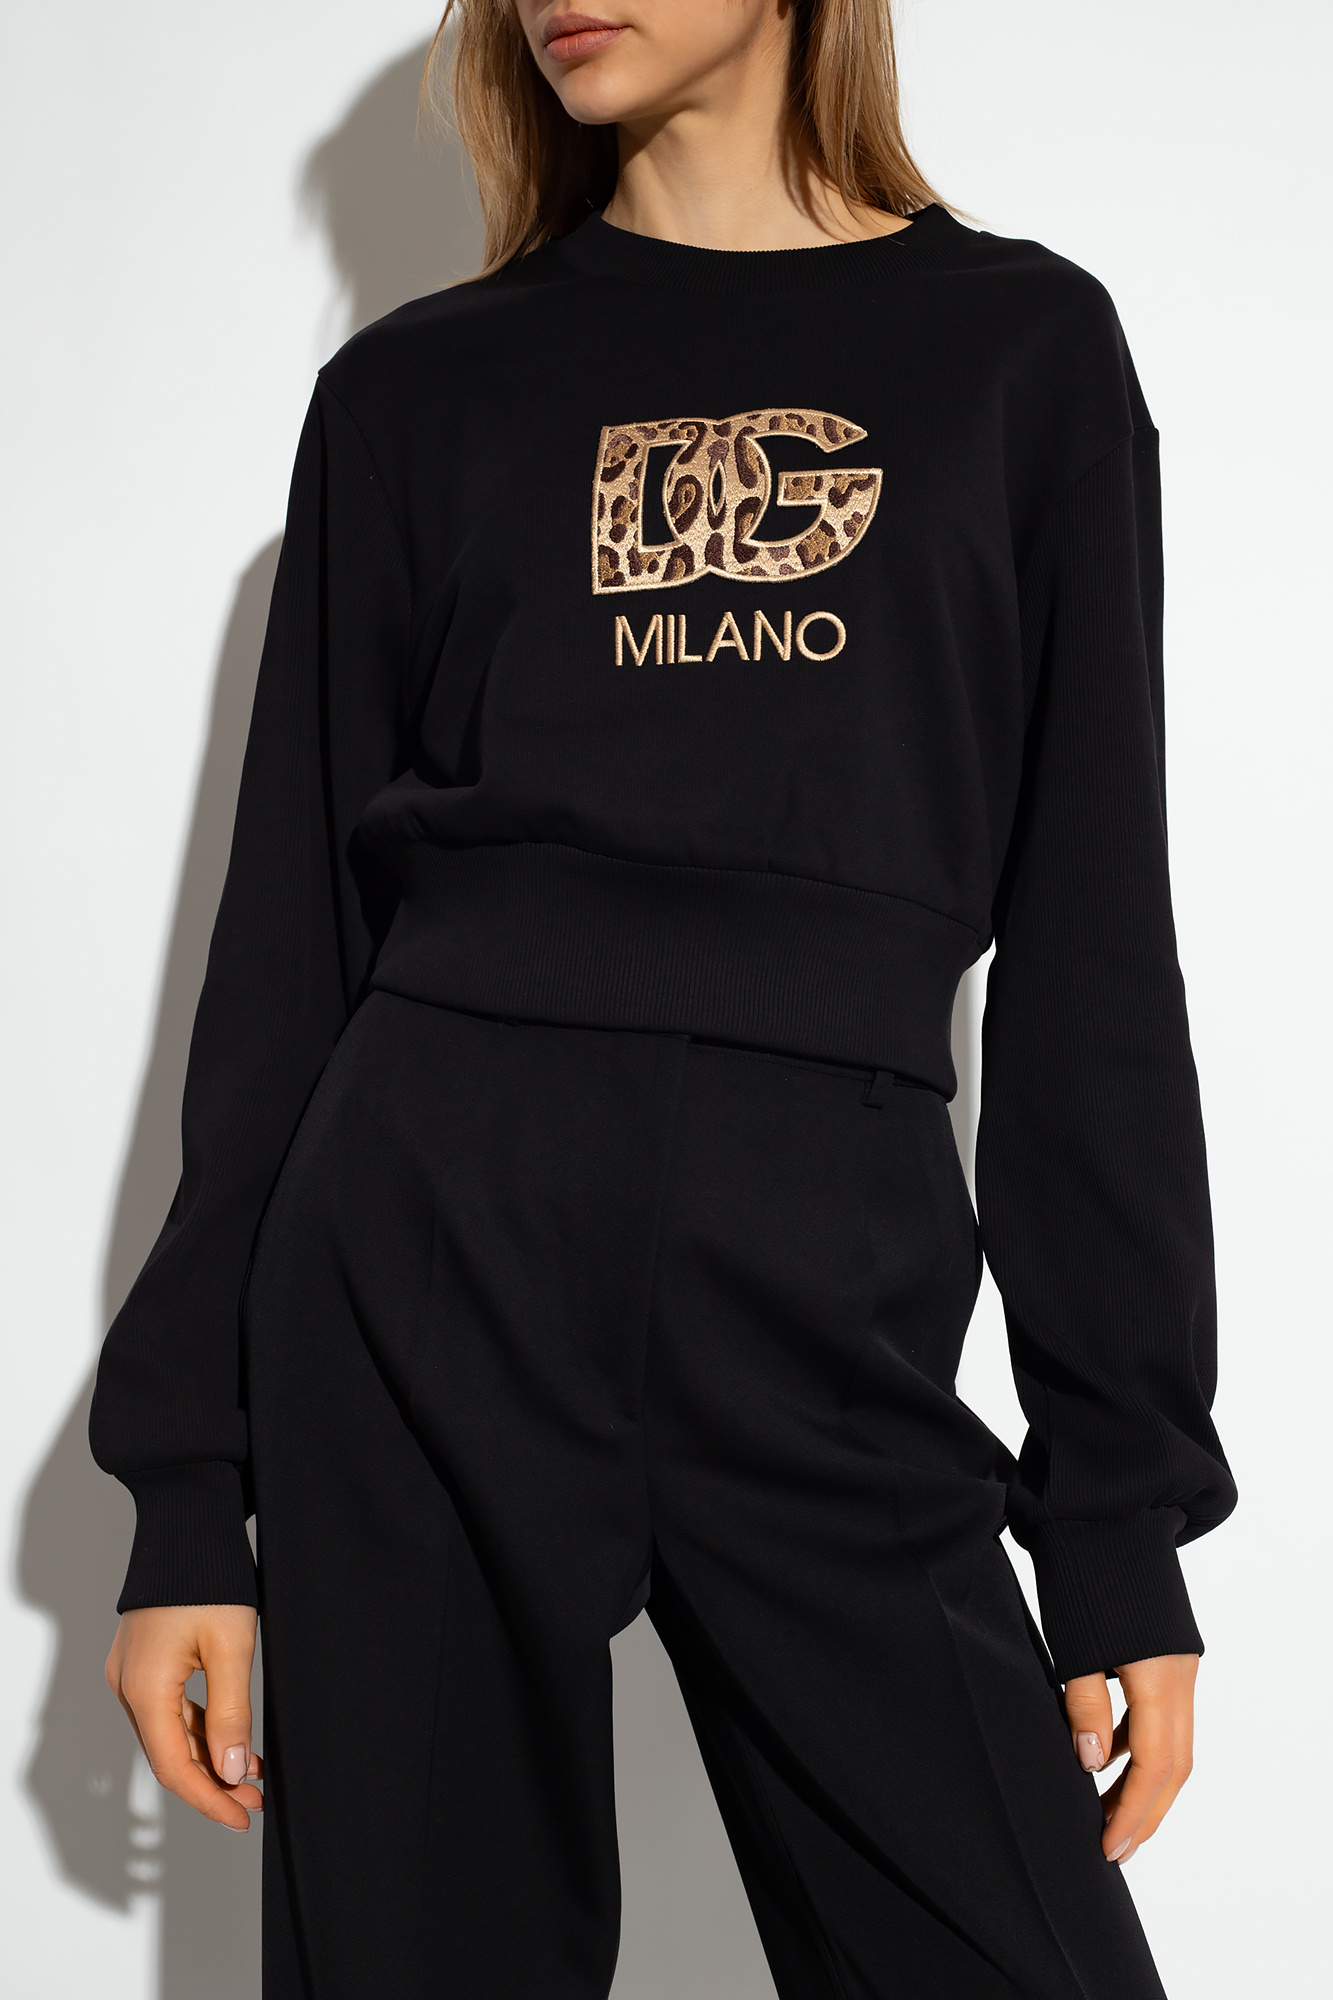 Oli 100% naturali di mandorla dolce Dolce & Gabbana Kids Italian-flag logo sleeveless top